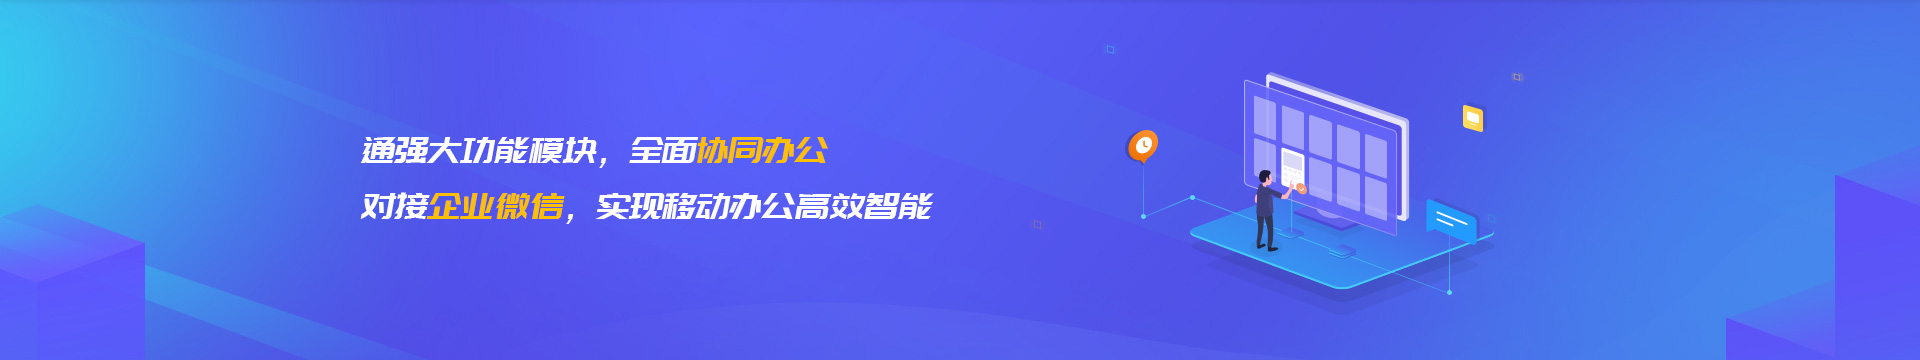 黄南藏族企业微信开发